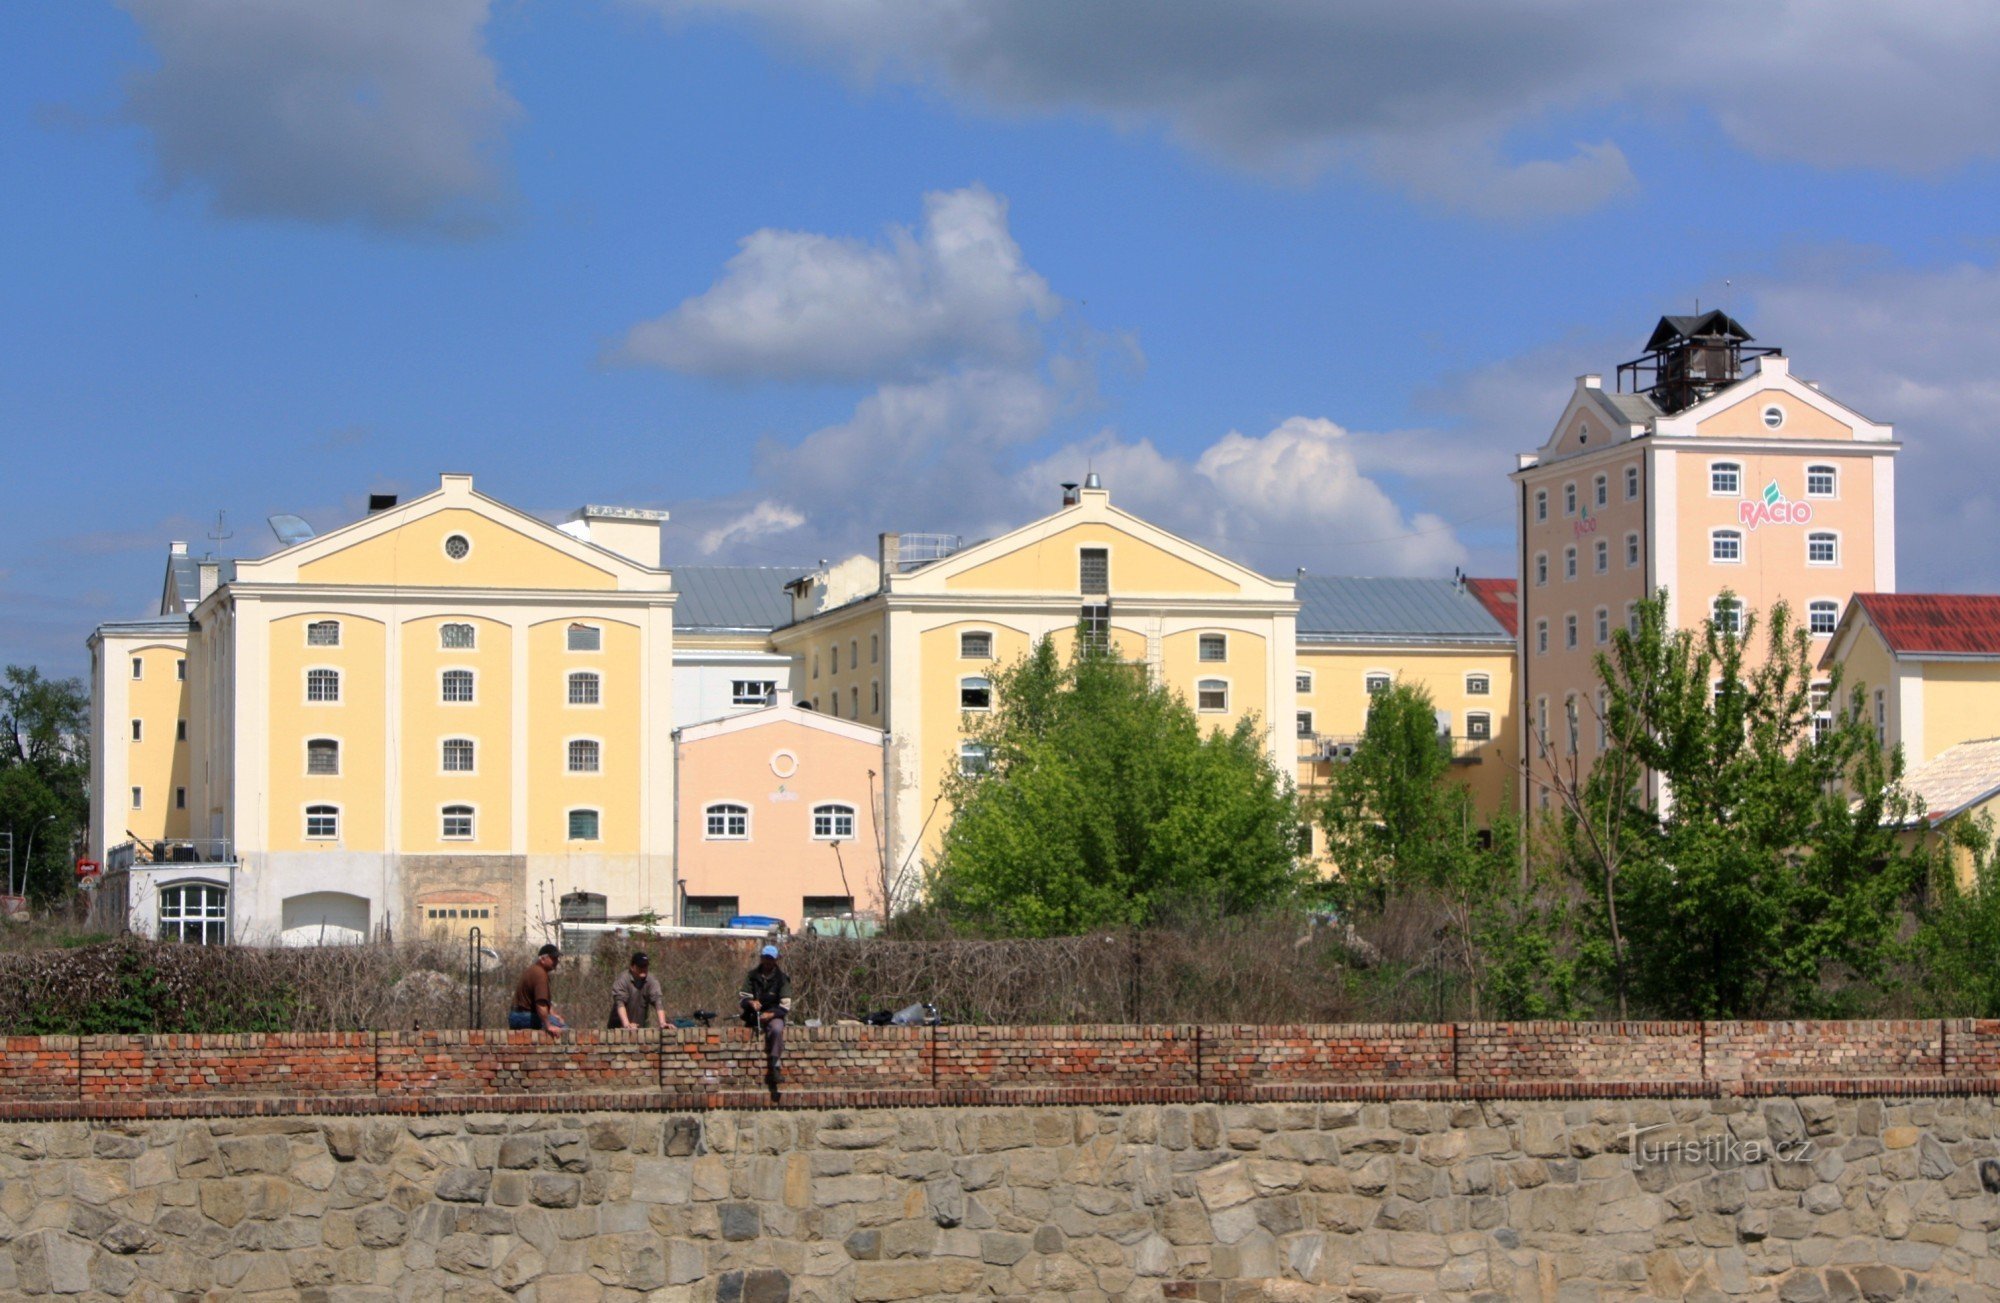 Břeclav - mesto nekdanje tovarne sladkorja